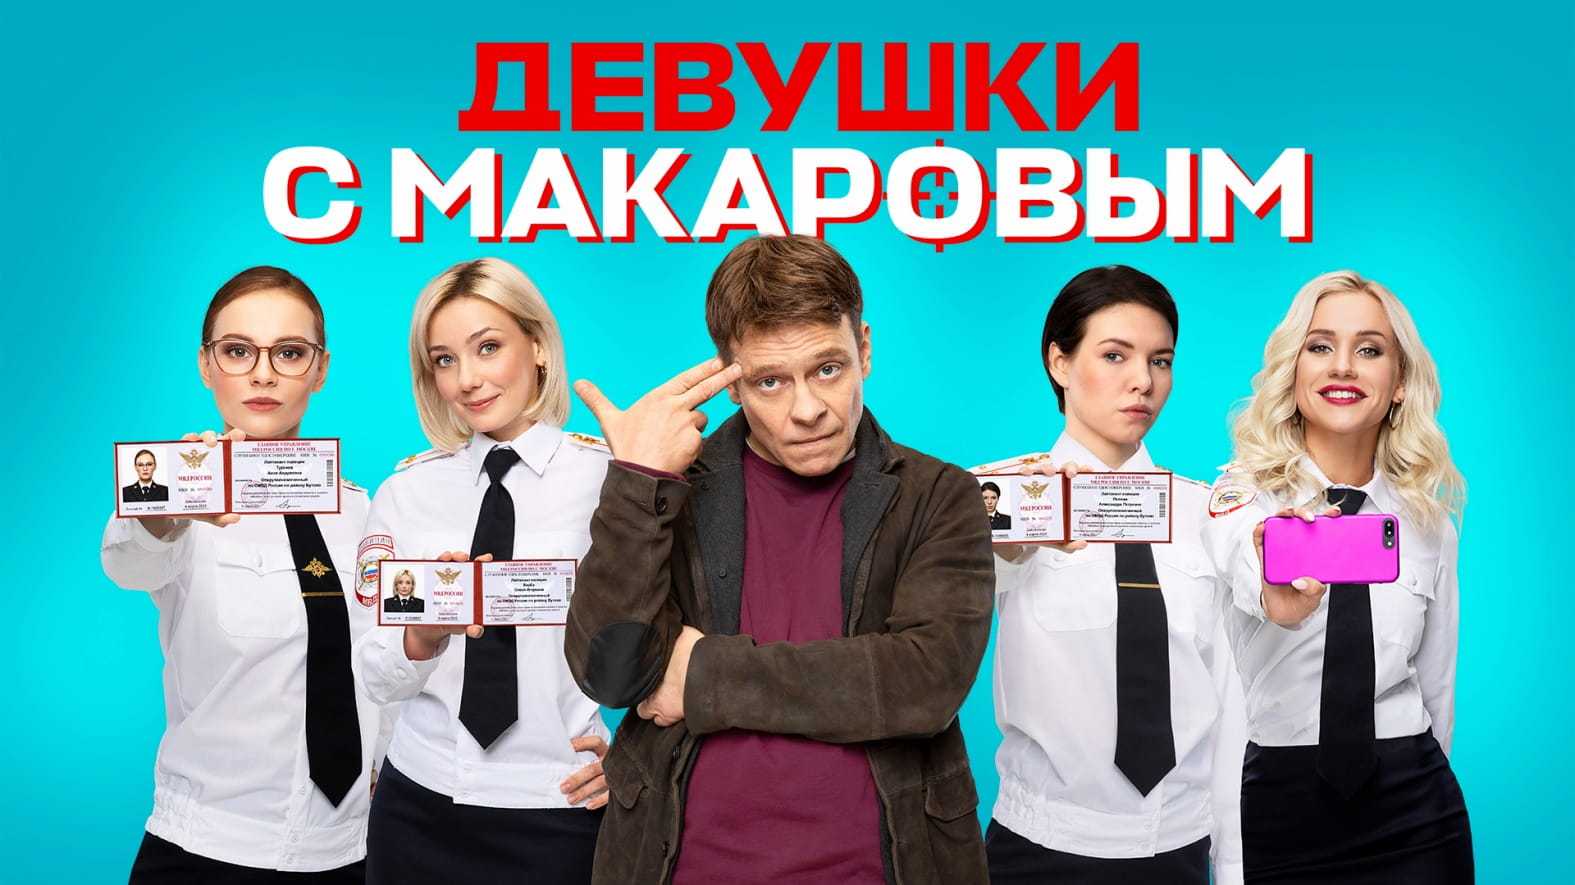 Рассказ служанки 4 сезон дата выхода серий в россии в 2021 году, когда выйдет сериал и будет ли трейлер на русском